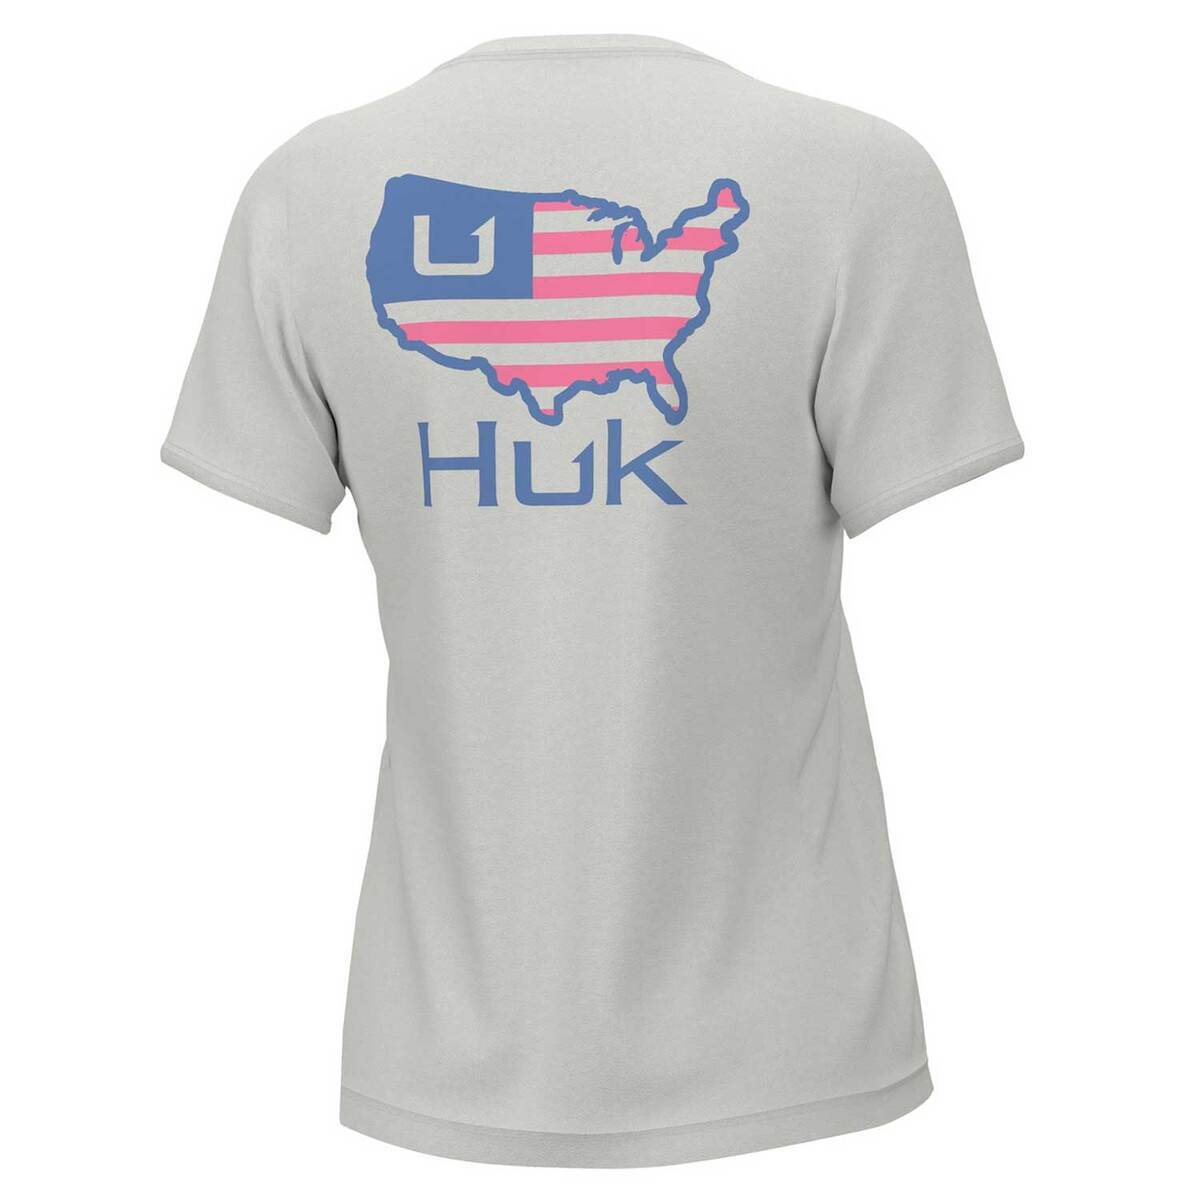 Huk Fishing Short Sleeve Shirts - Tackle Warehouse